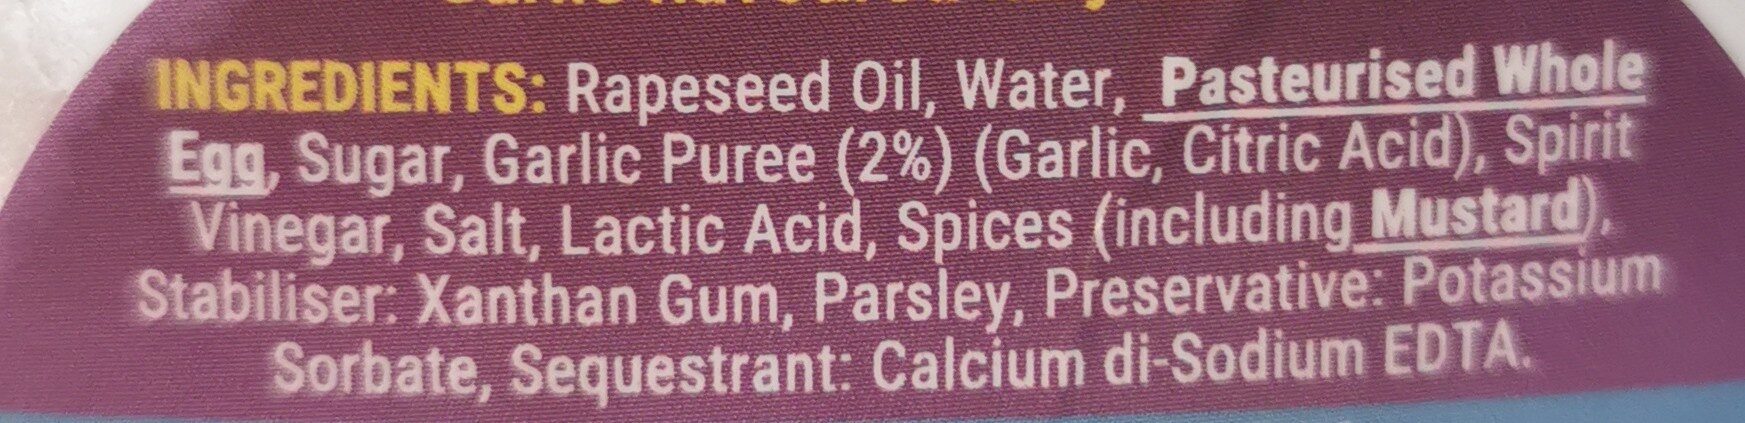 Garlic Mayo - Ingredients